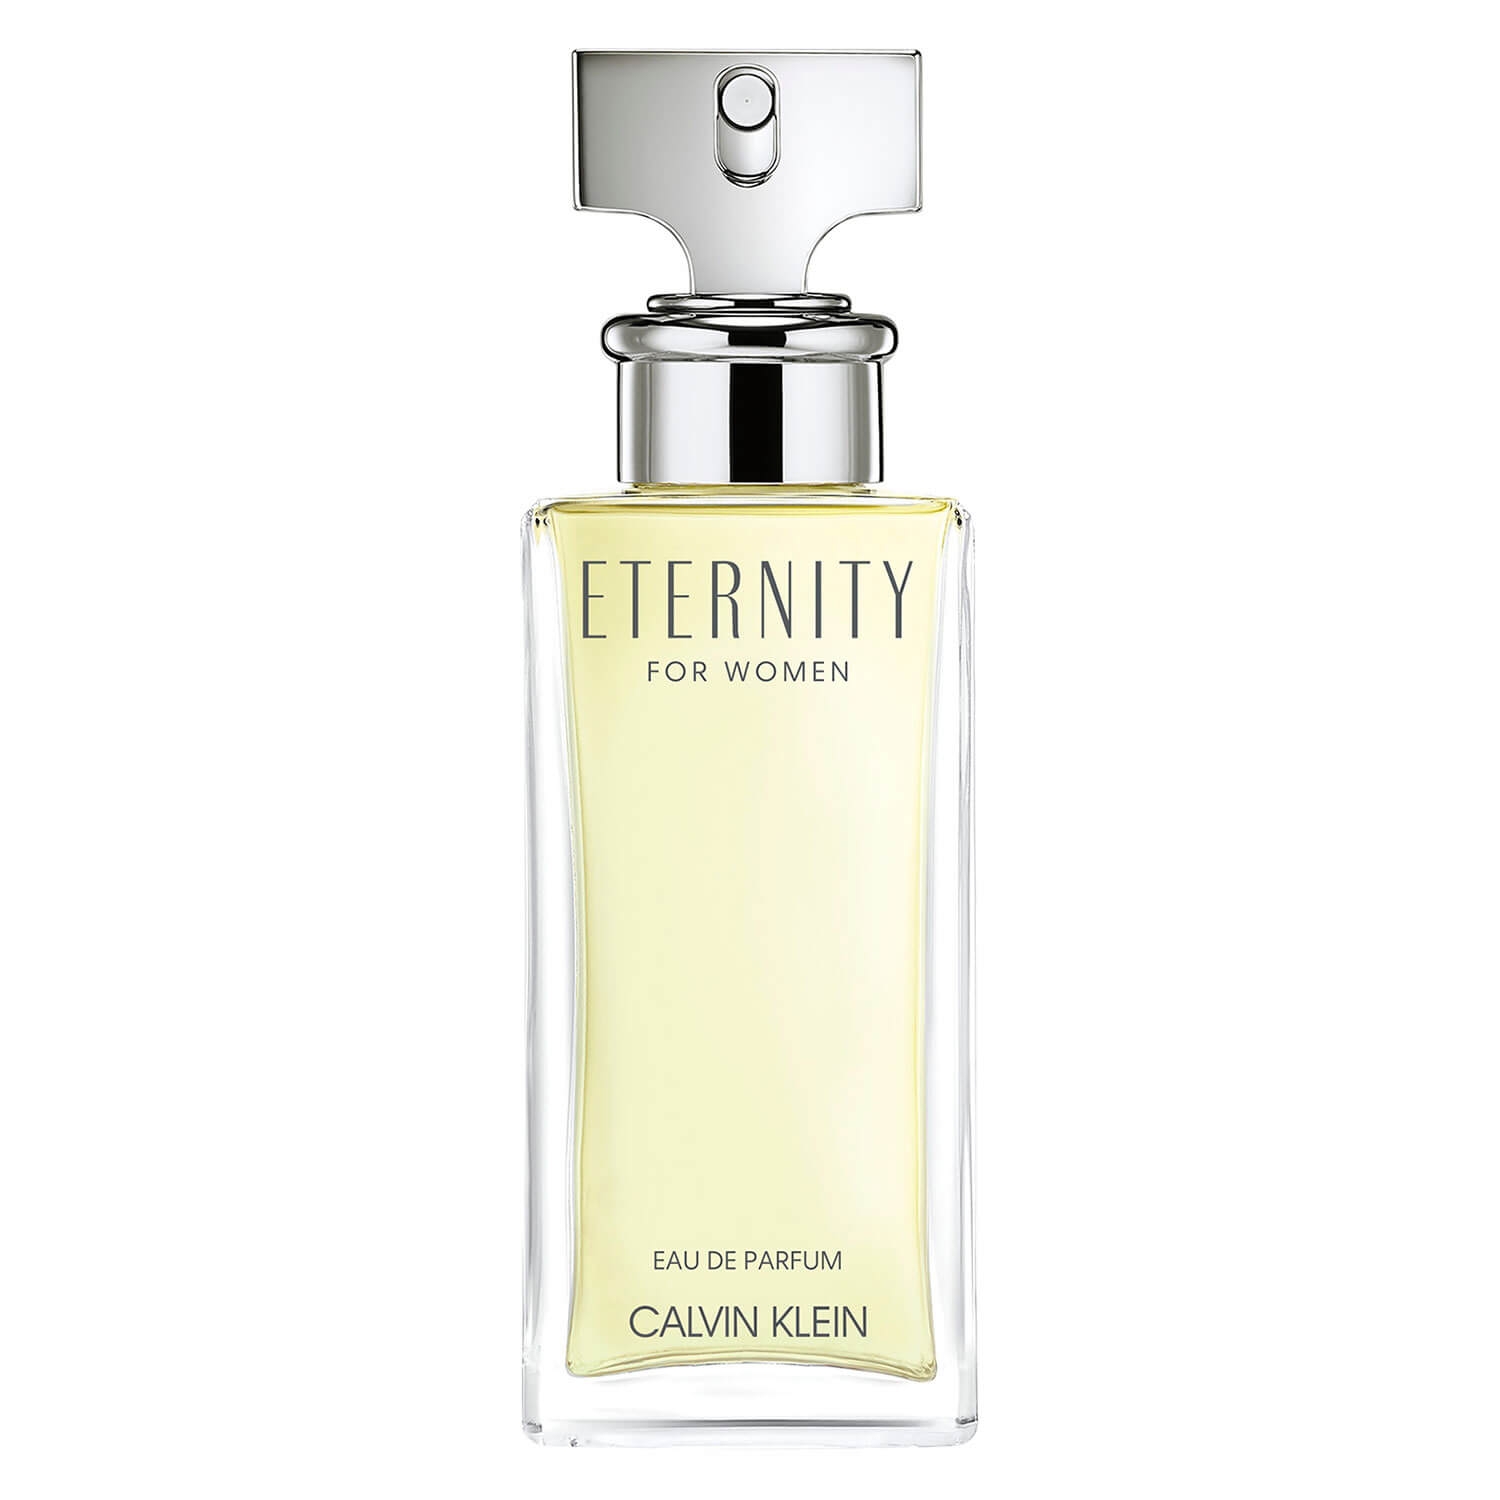 Product image from Eternity - Eau de Parfum